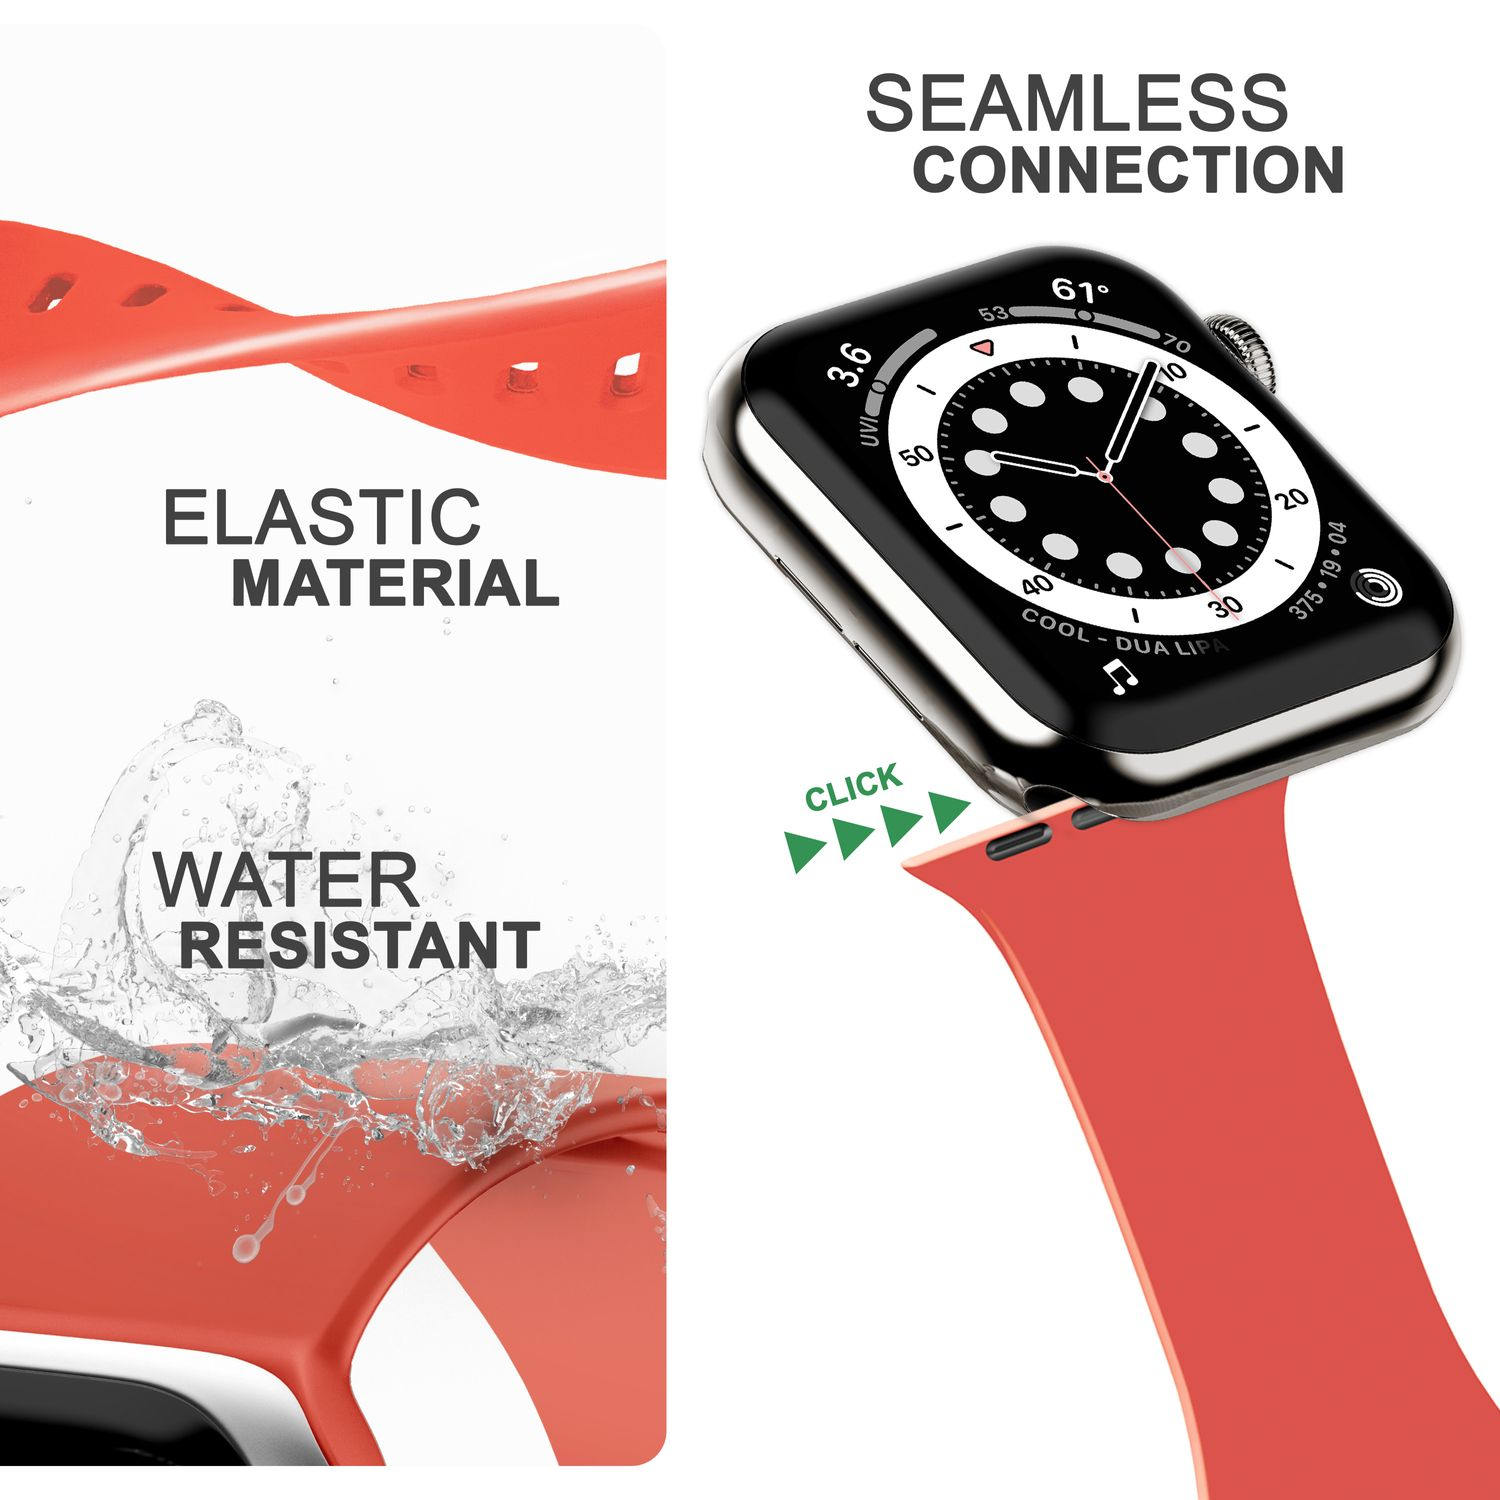 NALIA Smartwatch Silikon Ersatzarmband, 42mm/44mm/45mm/49mm, Armband, Apple Rot Pastell Apple, Watch